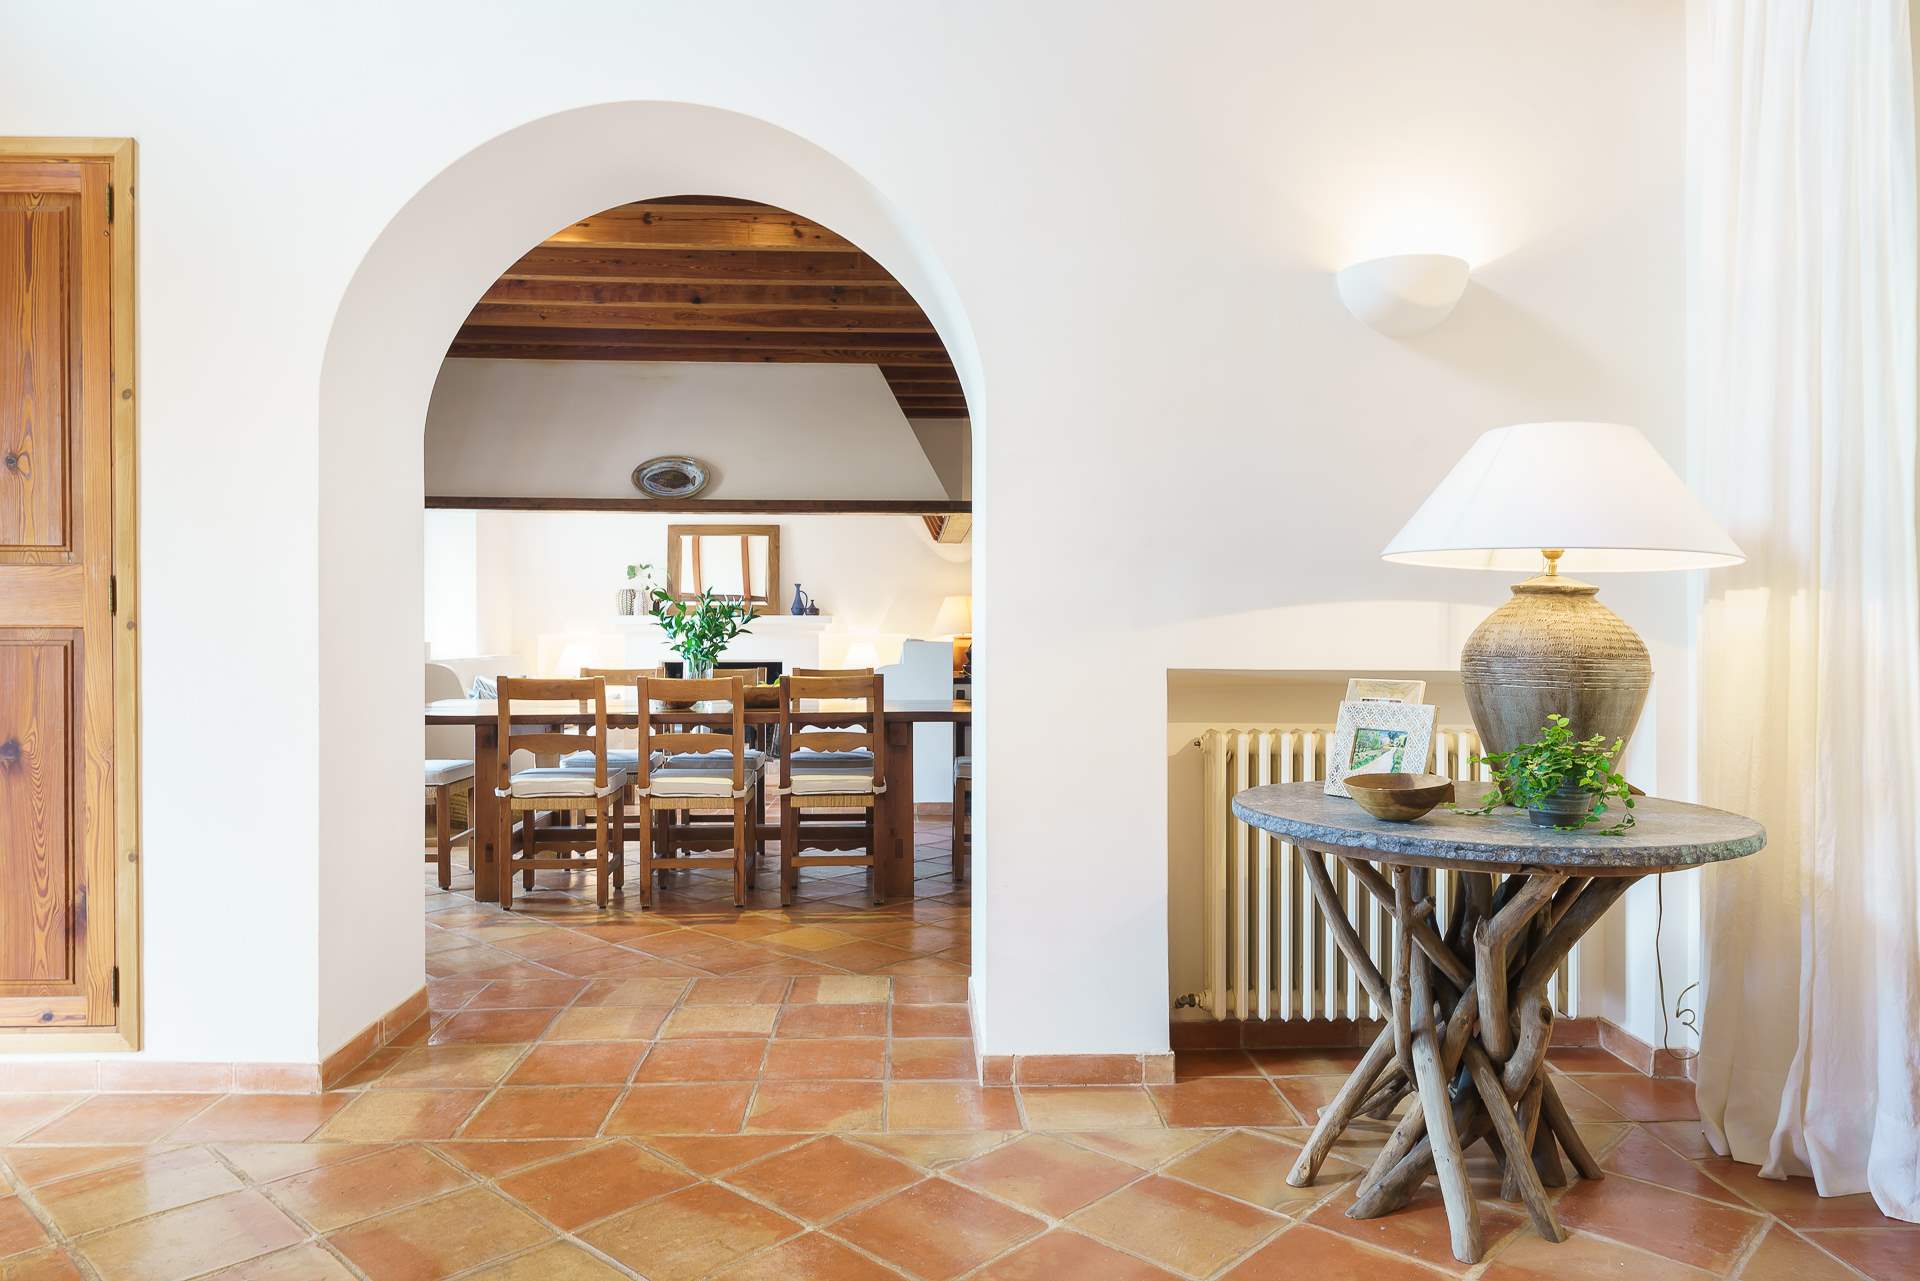 Sa Tanca, 3 Bedroom Rental, 3 bedroom villa in Soller & Deia, Majorca Photo #19